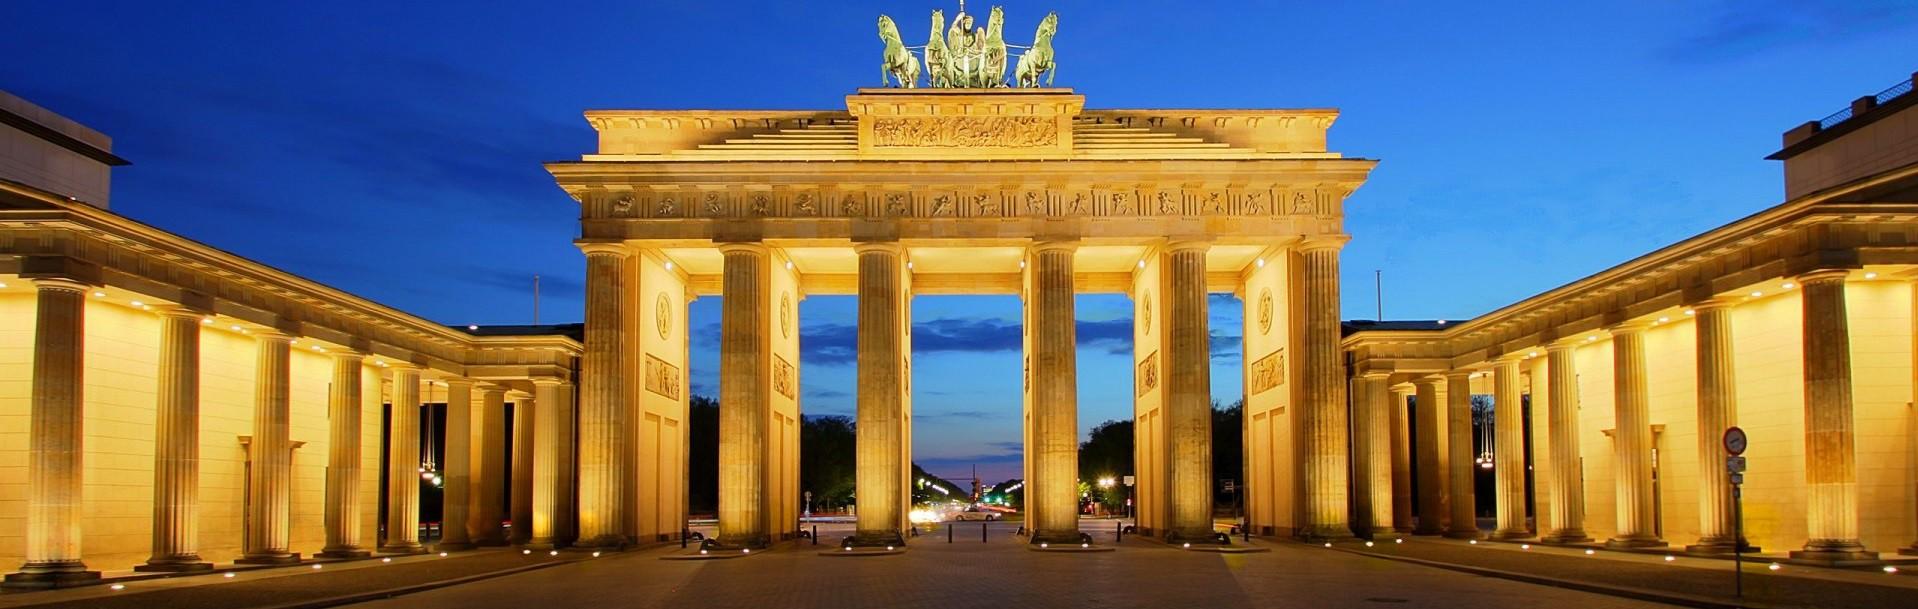 دروازه براندنبورگ برلین Brandenburg Gate